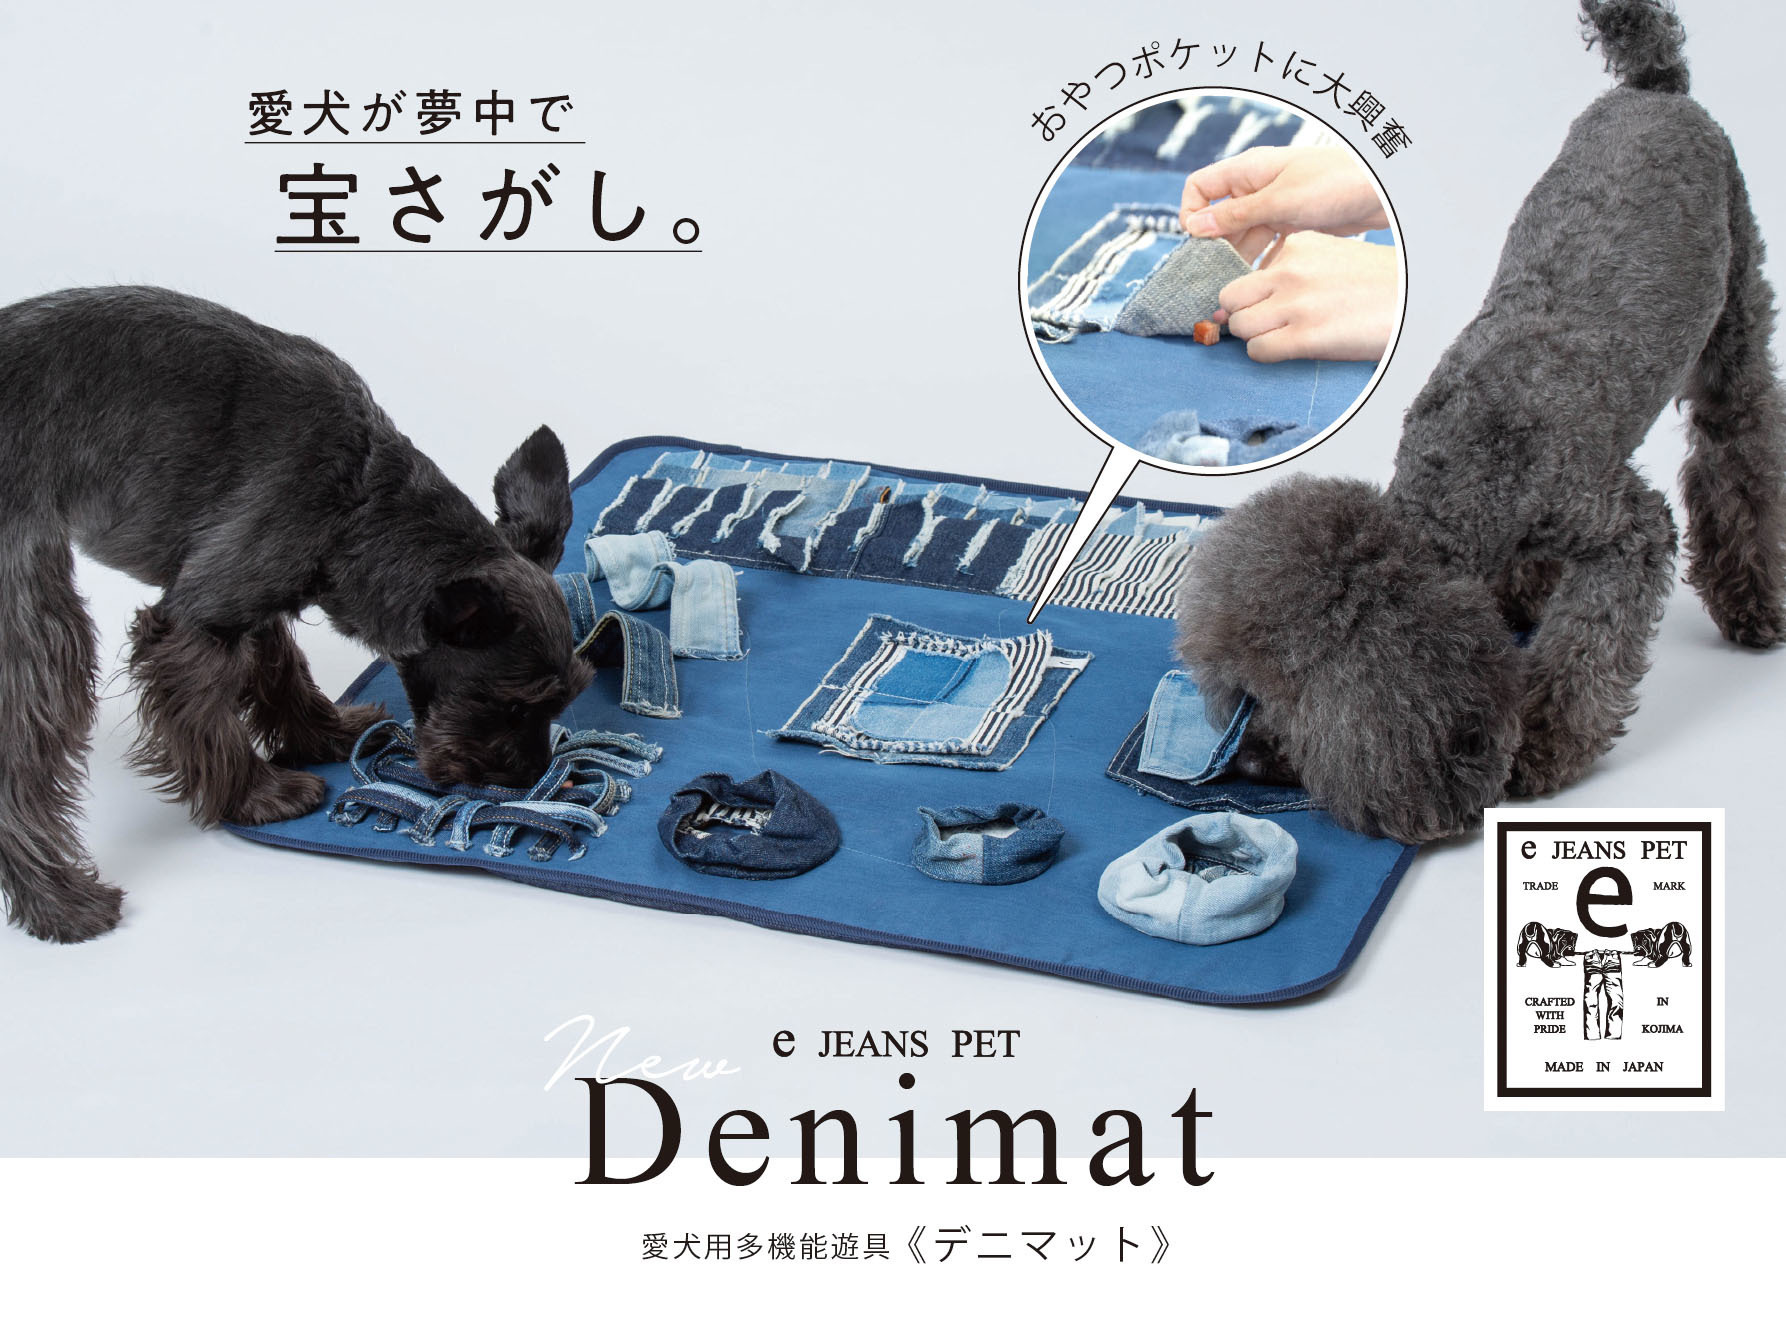 ニイヨンイチ 愛犬用多機能遊具 デニマット を発売 動物のリアルを伝えるwebメディア Reanimal